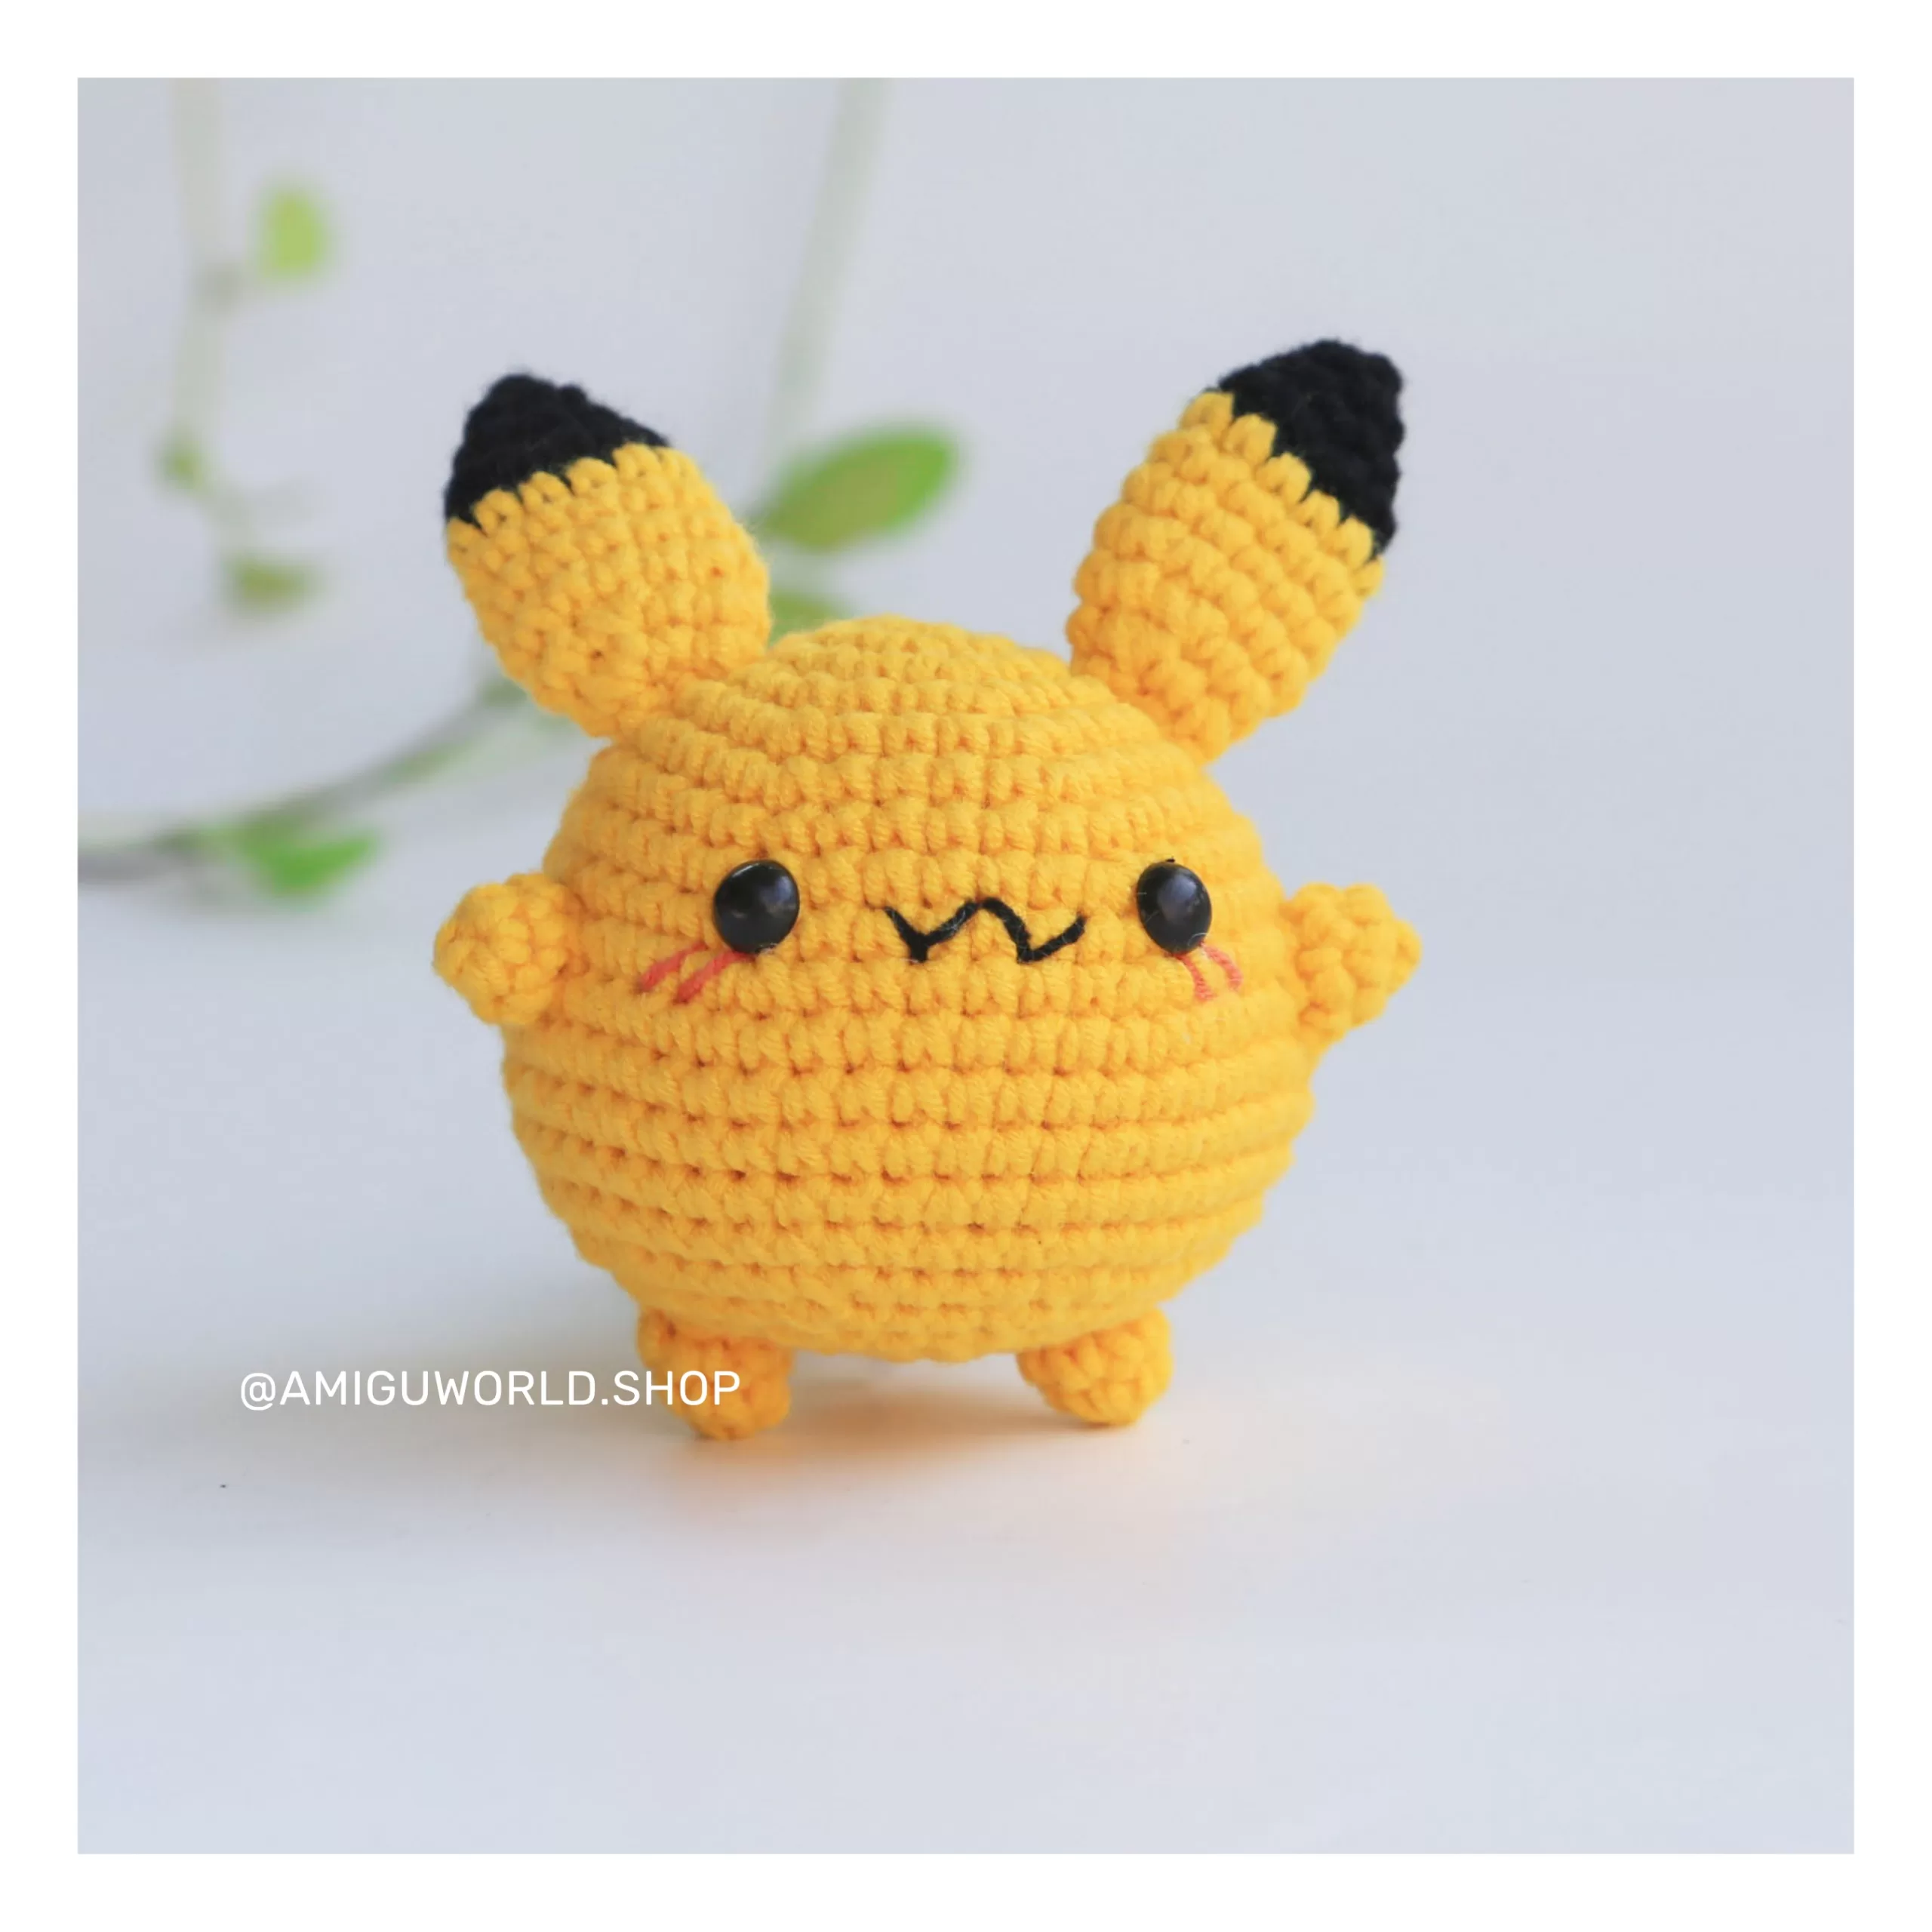 pikachu-amigurumi-doll-finished-by amiguworld (8)